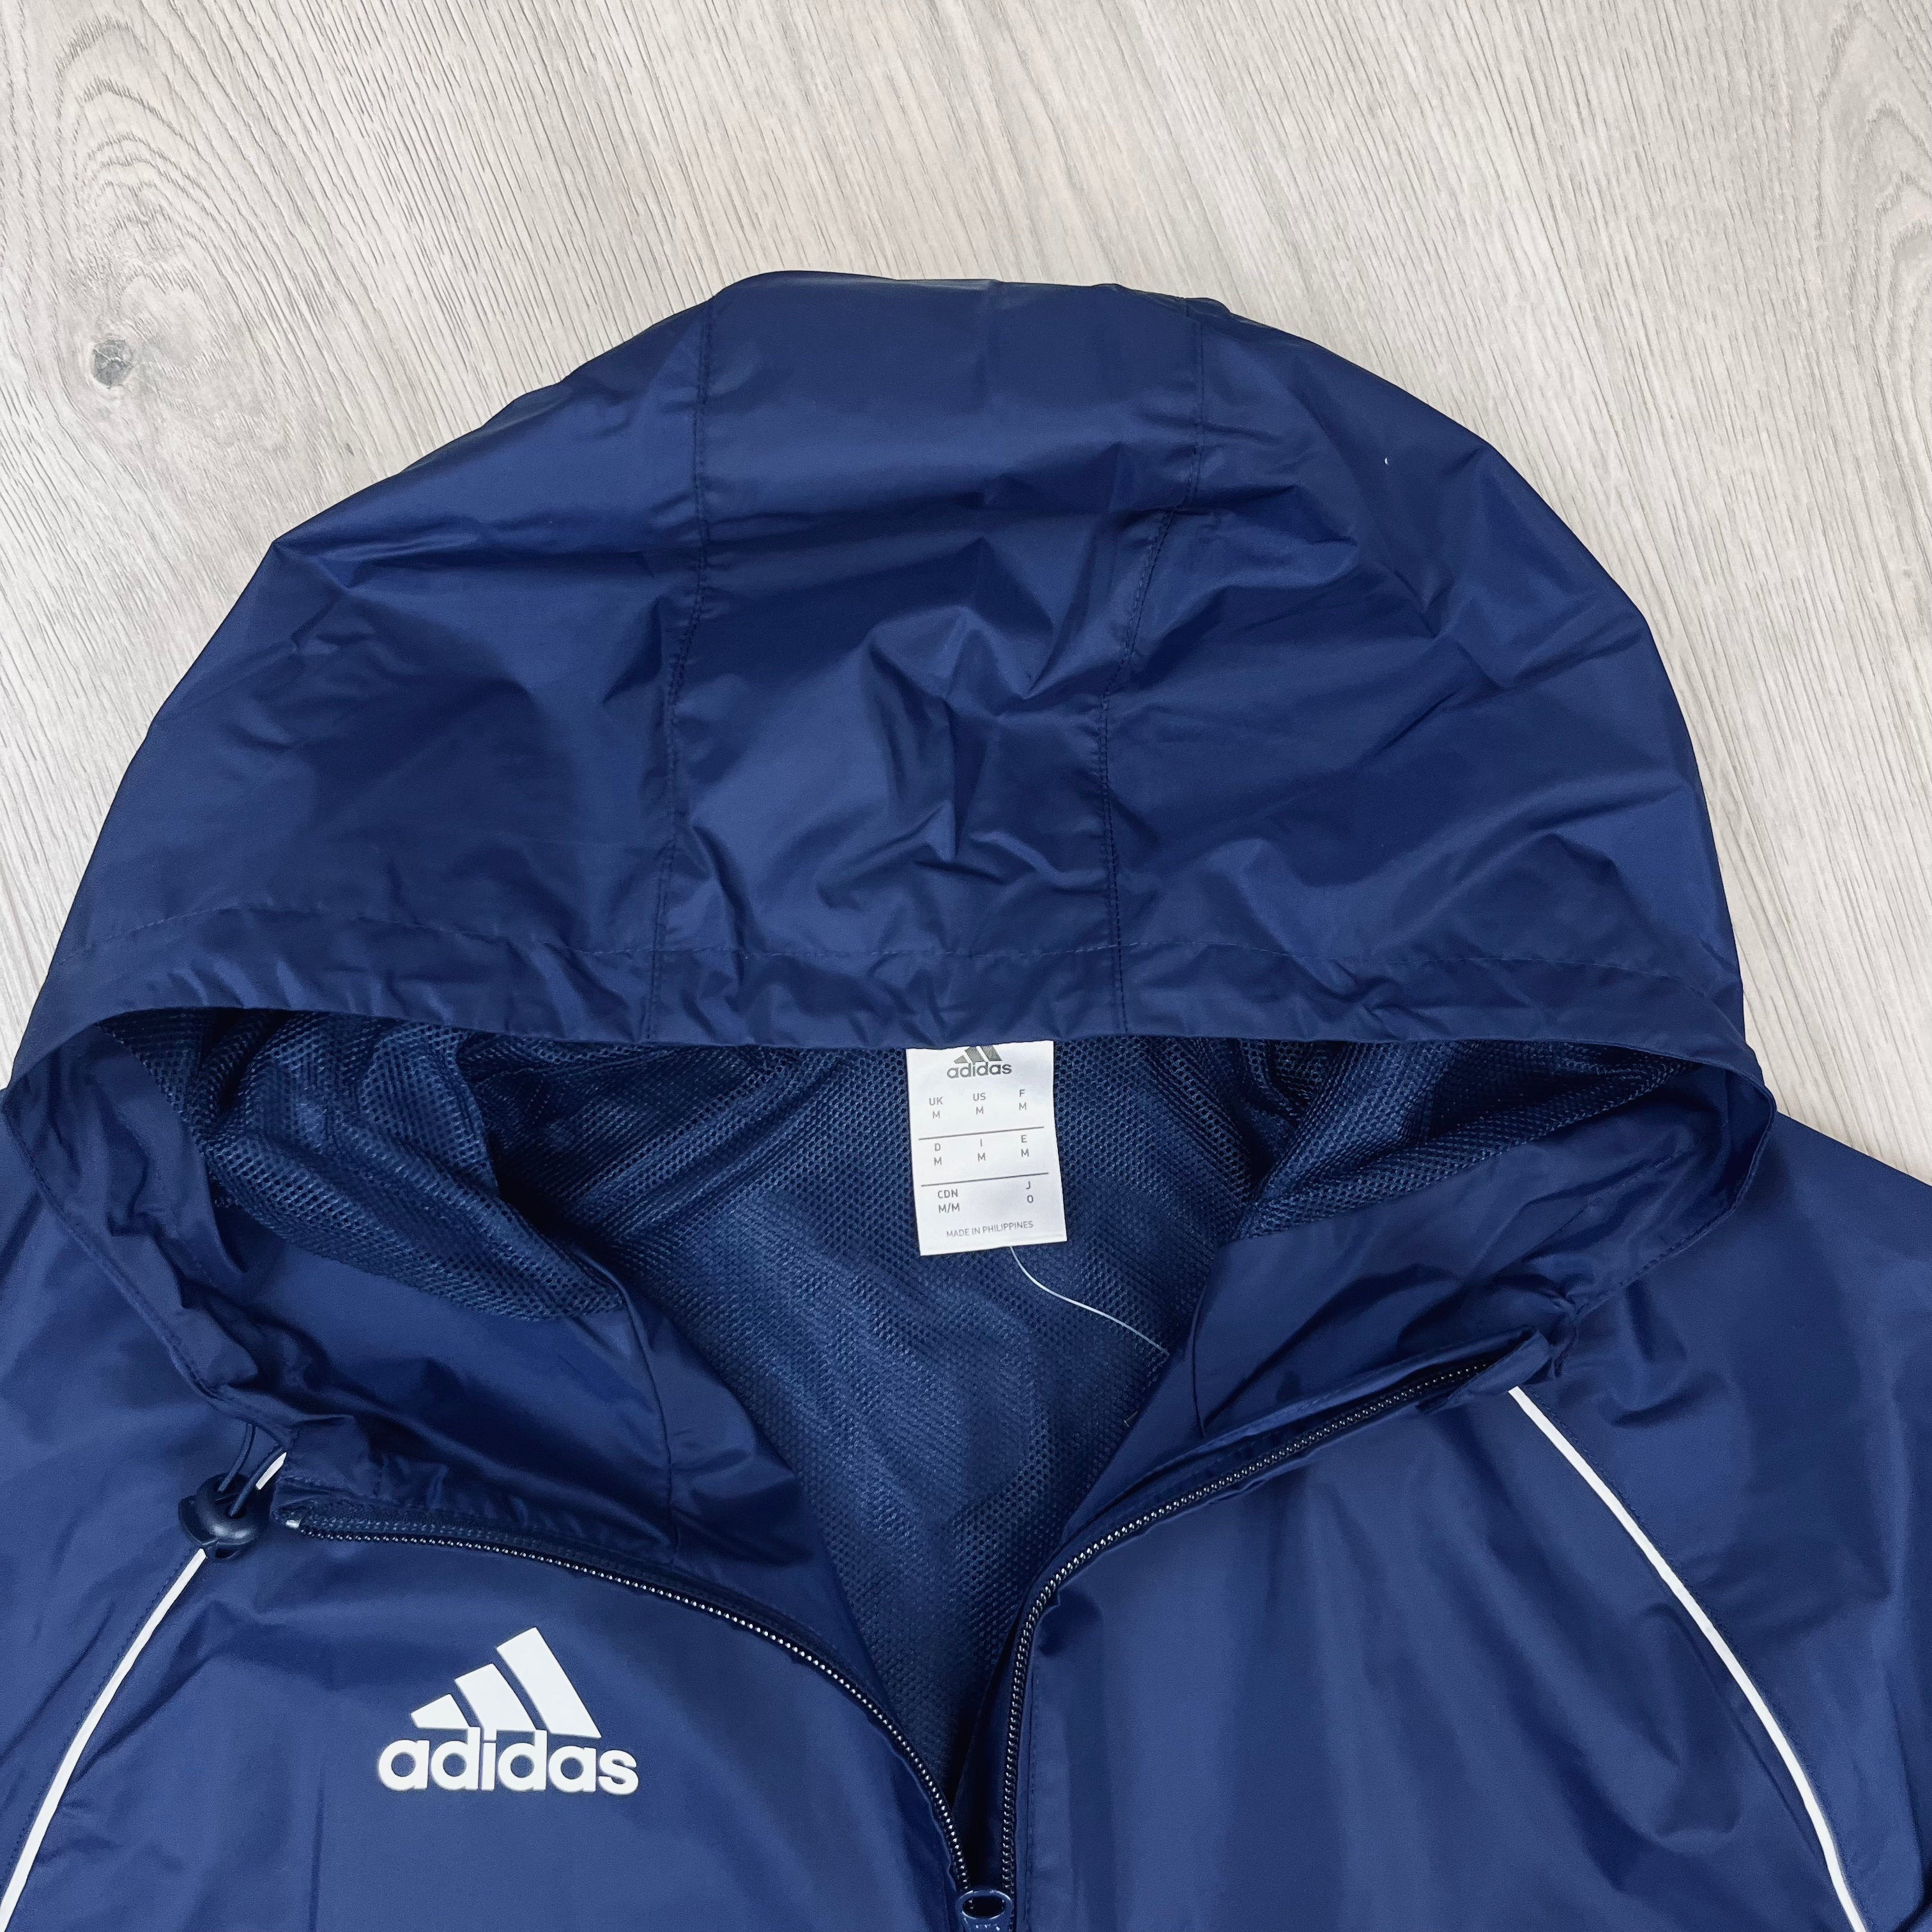 Adidas Core18 Jacket